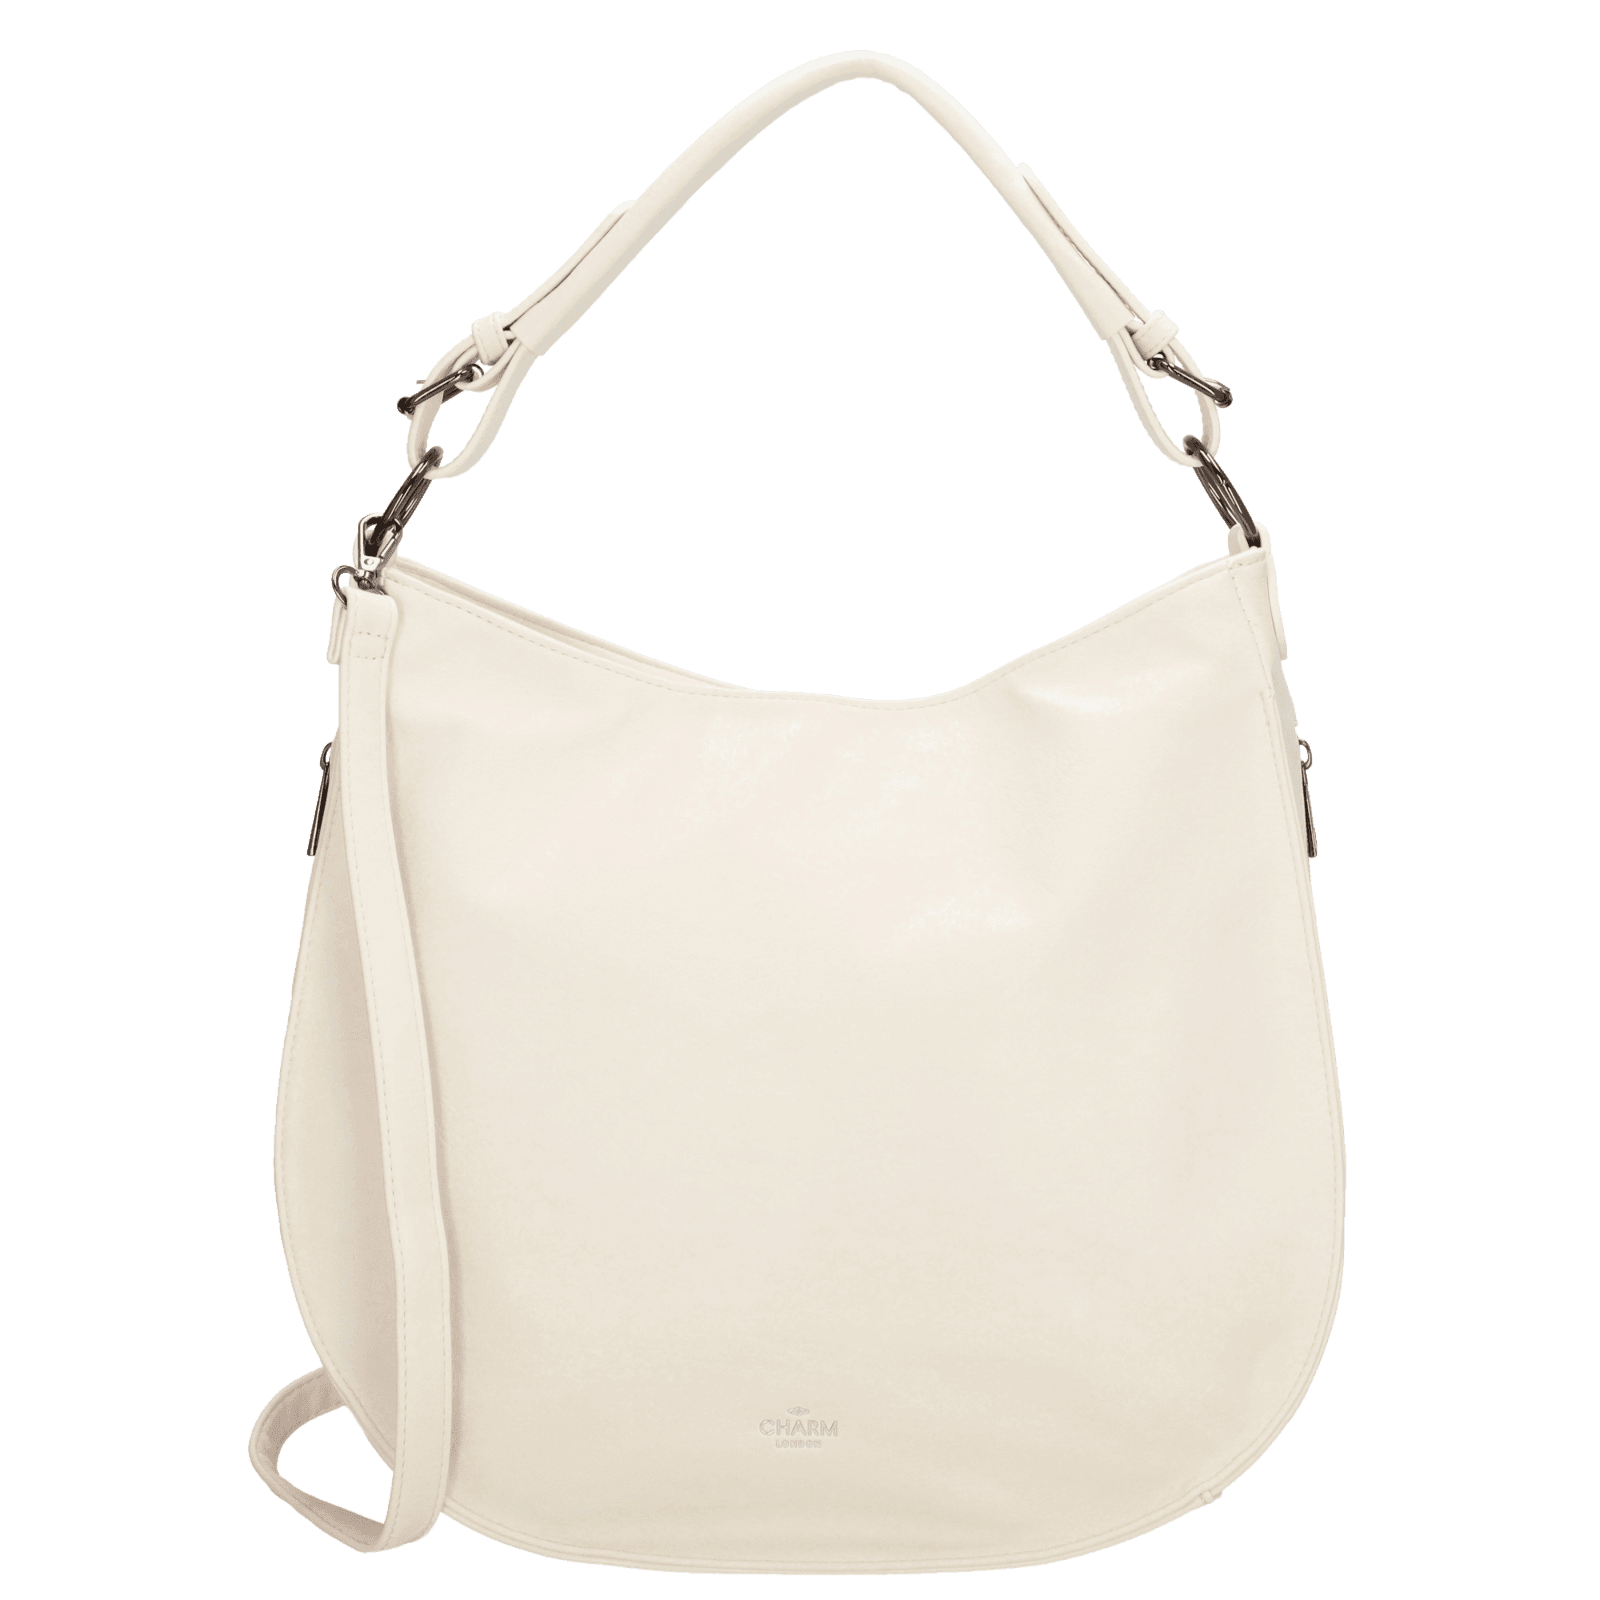 Charm London Liberty Shopper taška z umělé kůže - bílá